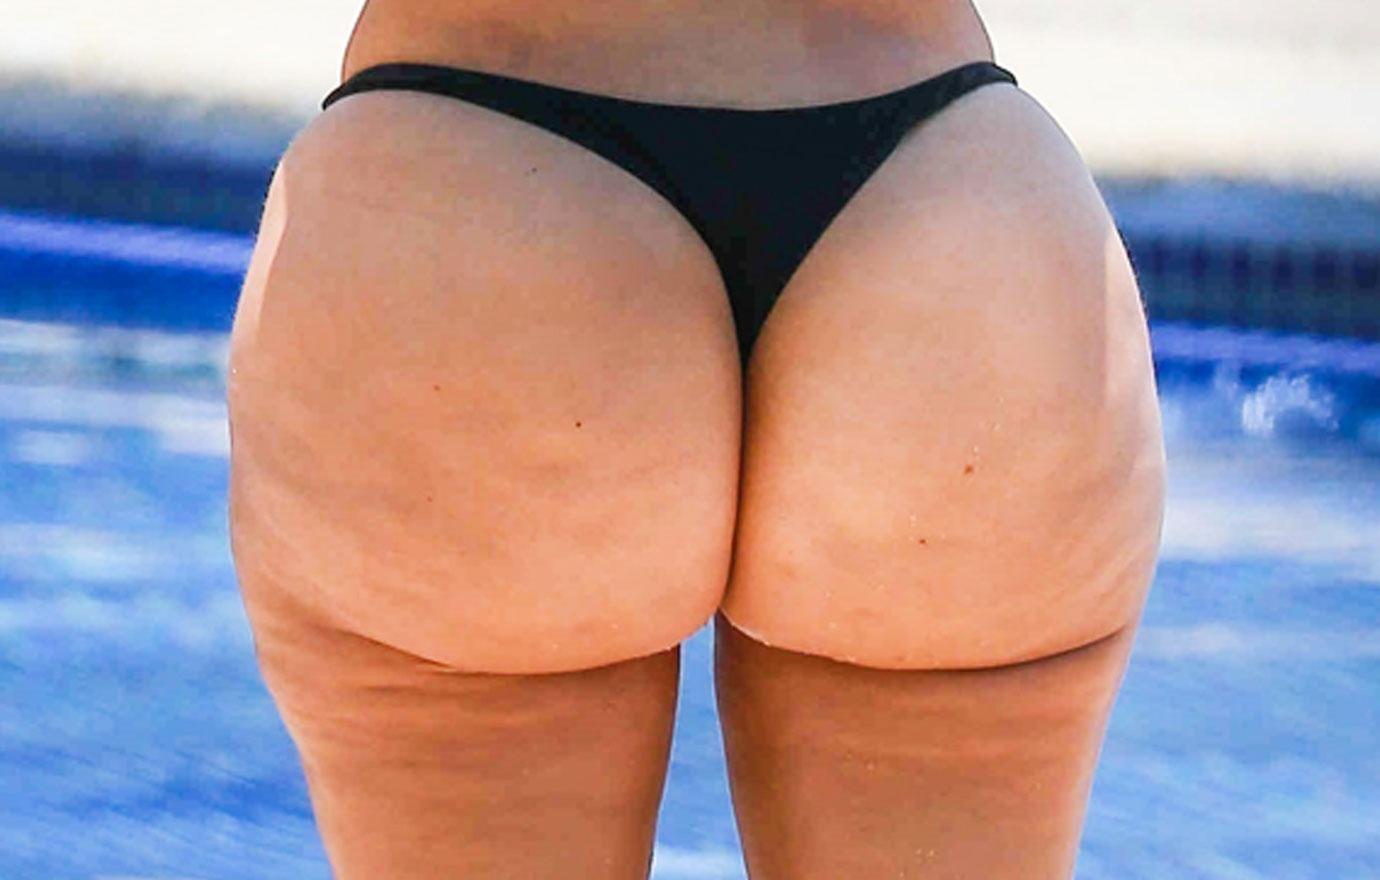 Big saggy butt